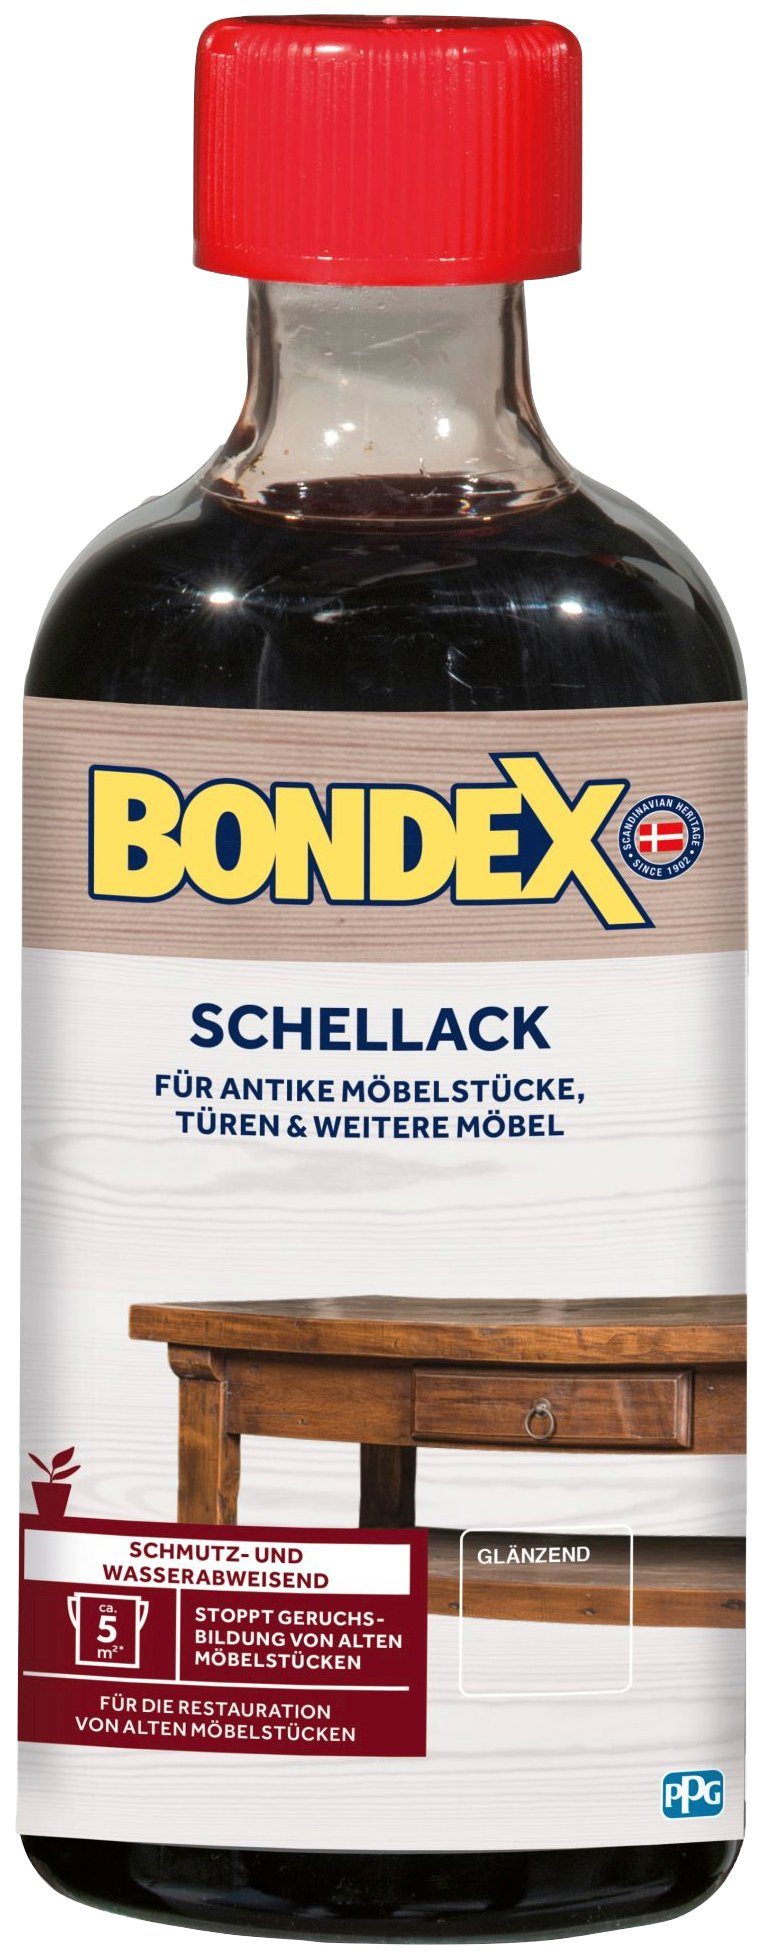 Bondex Holzlack SCHELLACK, Farblos /Glänzend, 0,25 Liter Inhalt